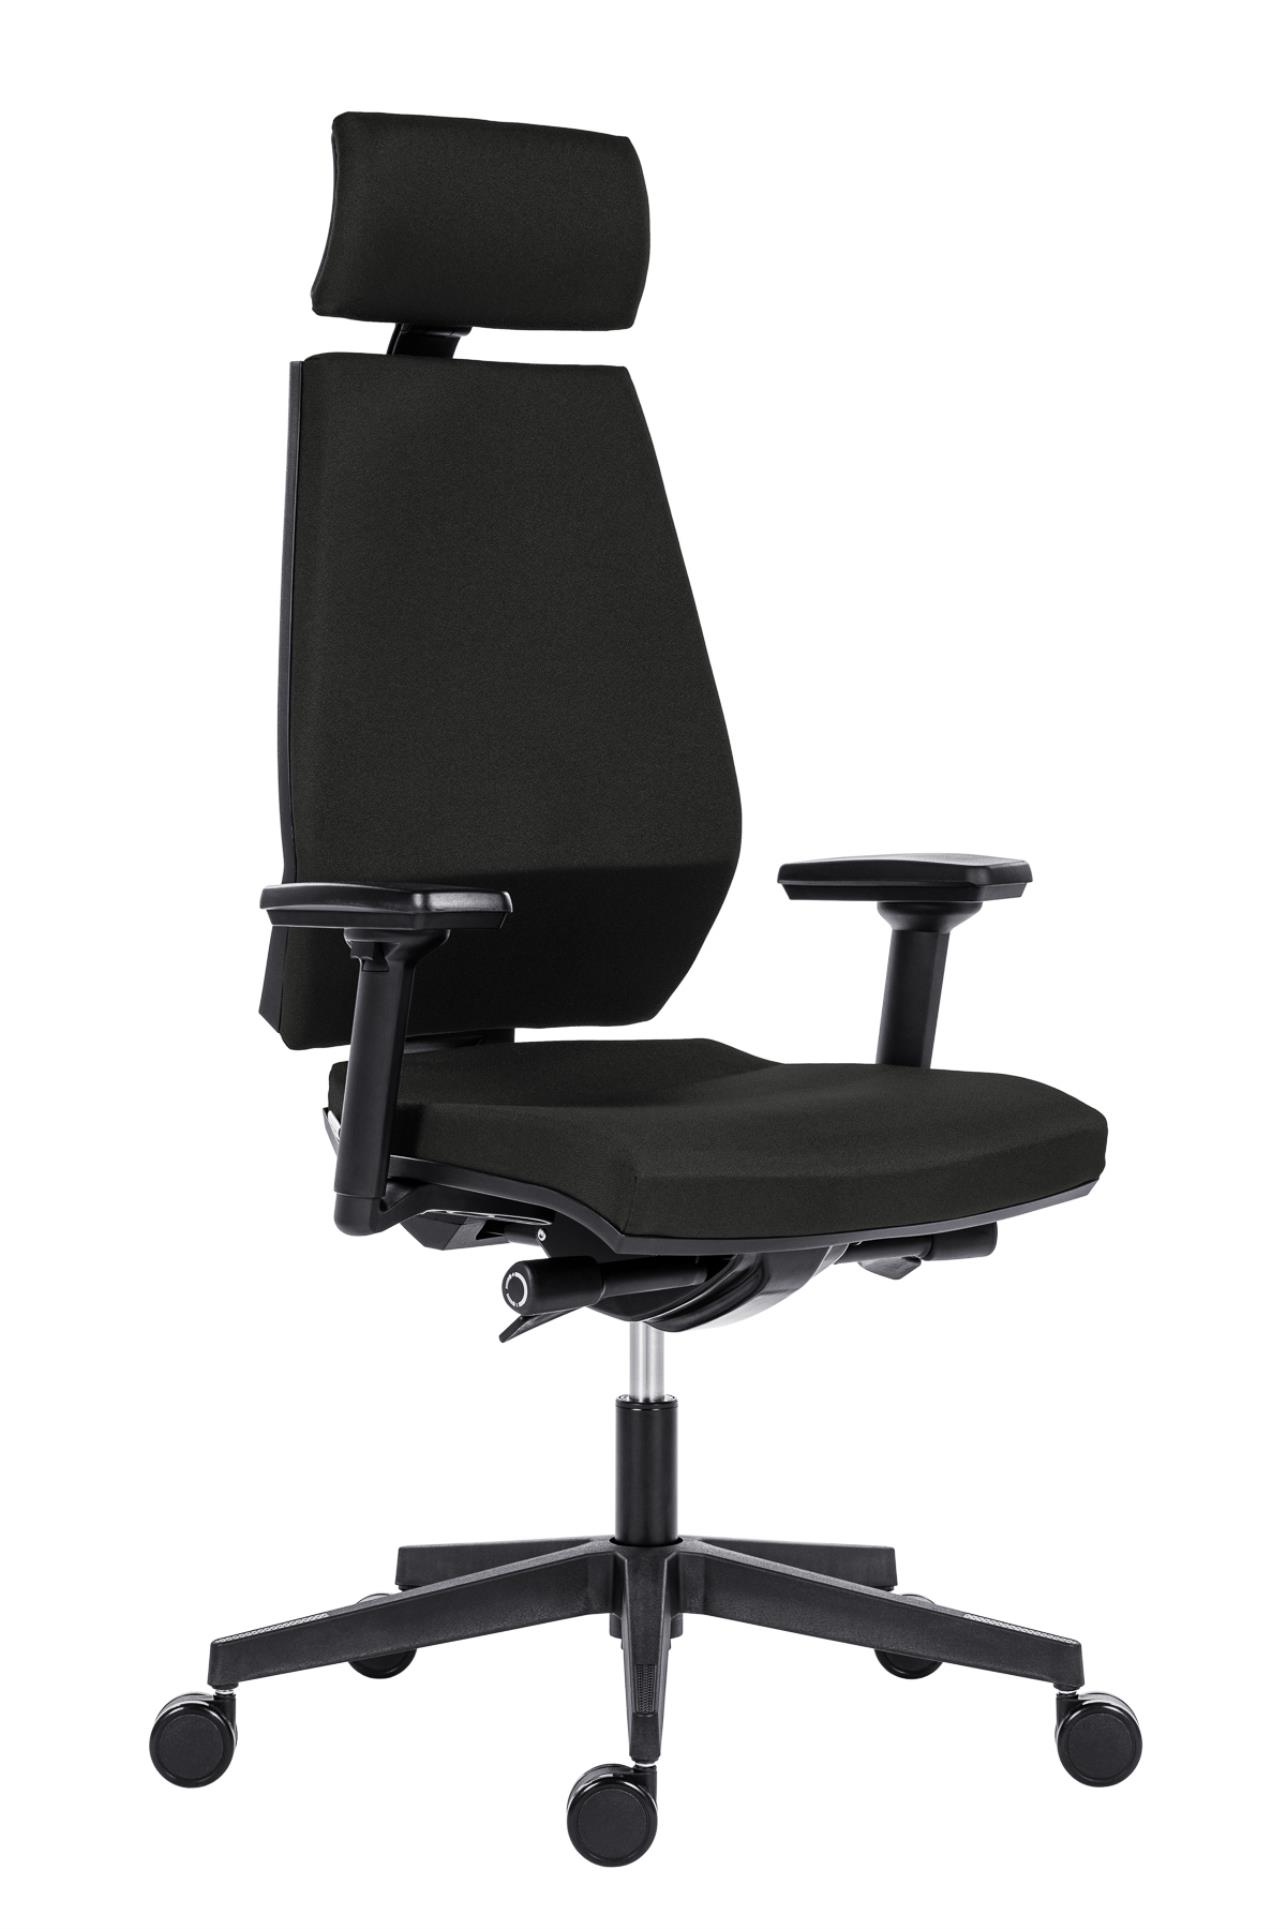 Antares Kancelářská židle Motion PDH - synchro, černá